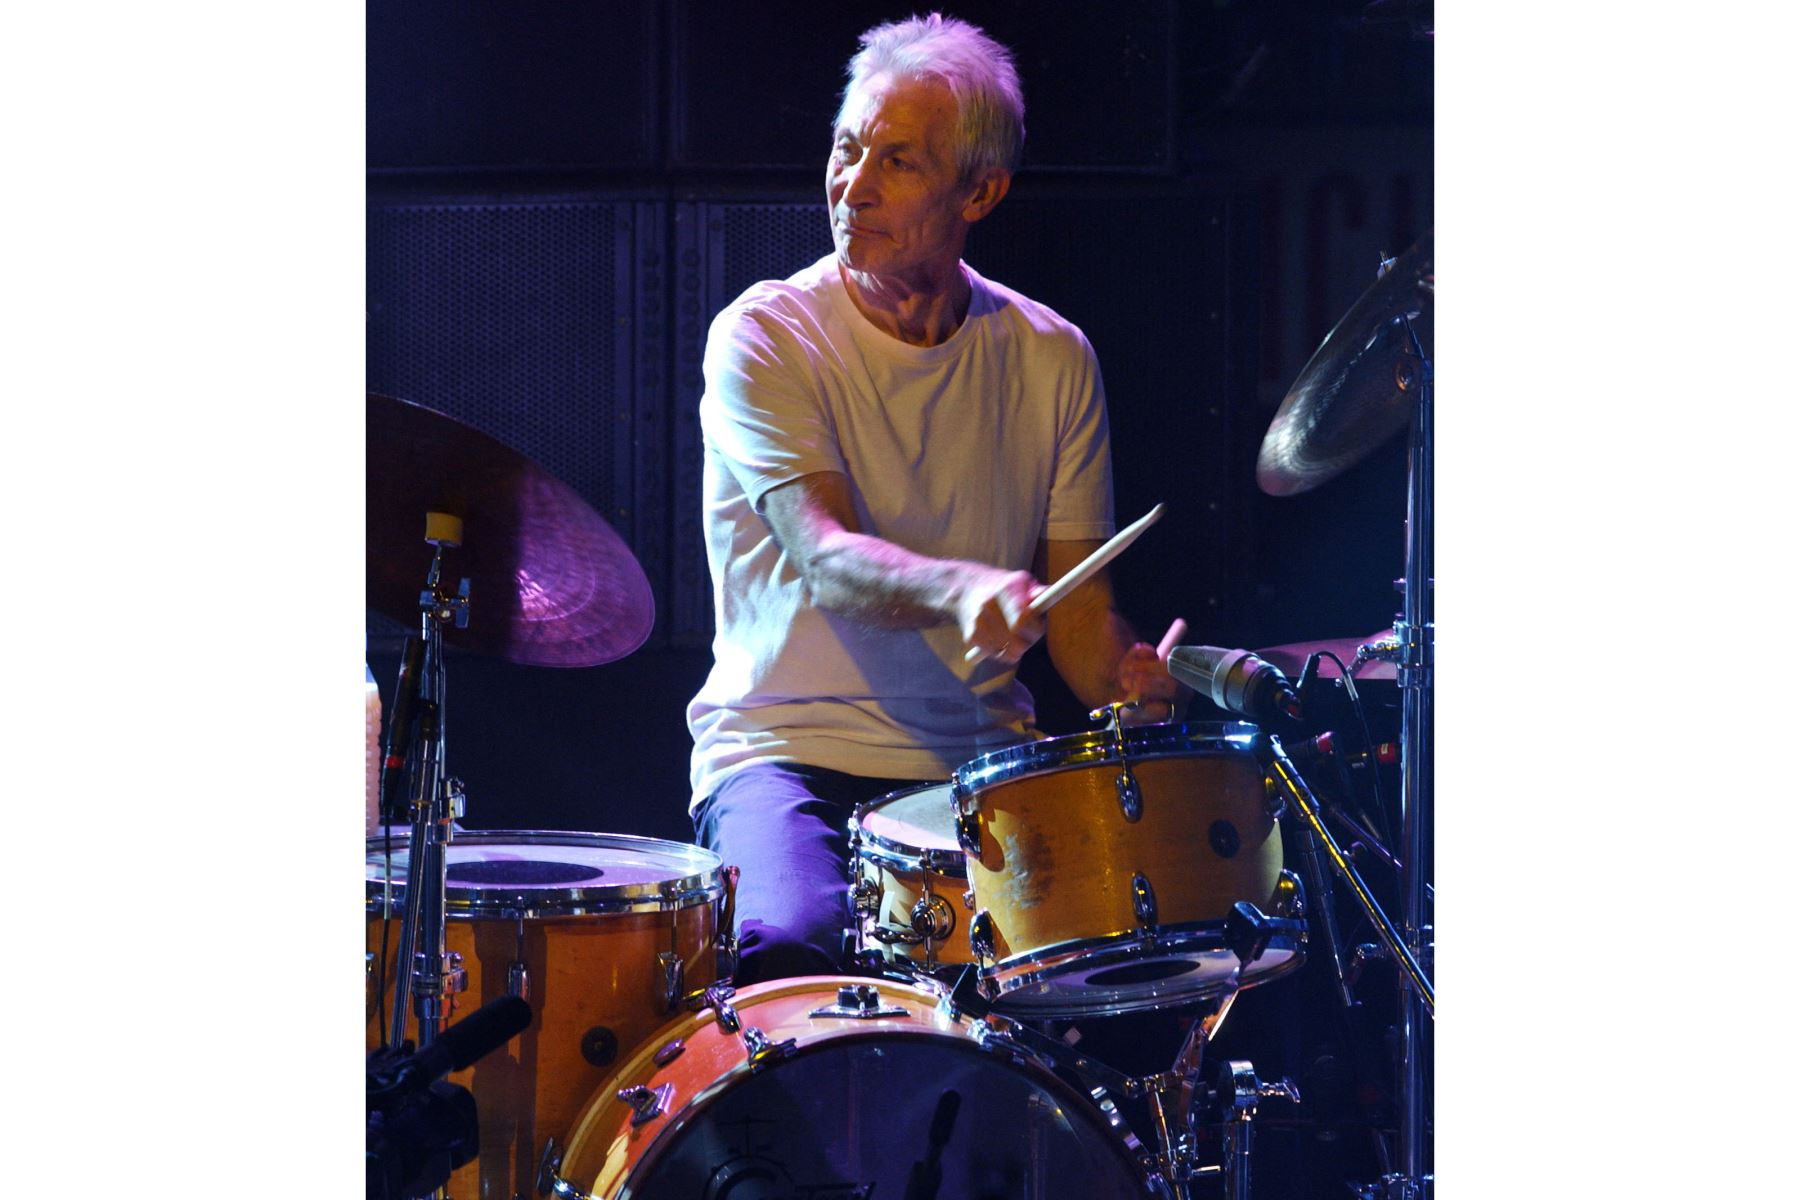 En esta foto de archivo tomada el 12 de julio de 2003, el baterista de los Rolling Stones, Charlie Watts, se presenta en el escenario de Olympia en el tercer y último concierto parisino de la gira mundial "Forty Licks" de la banda.
Foto: AFP